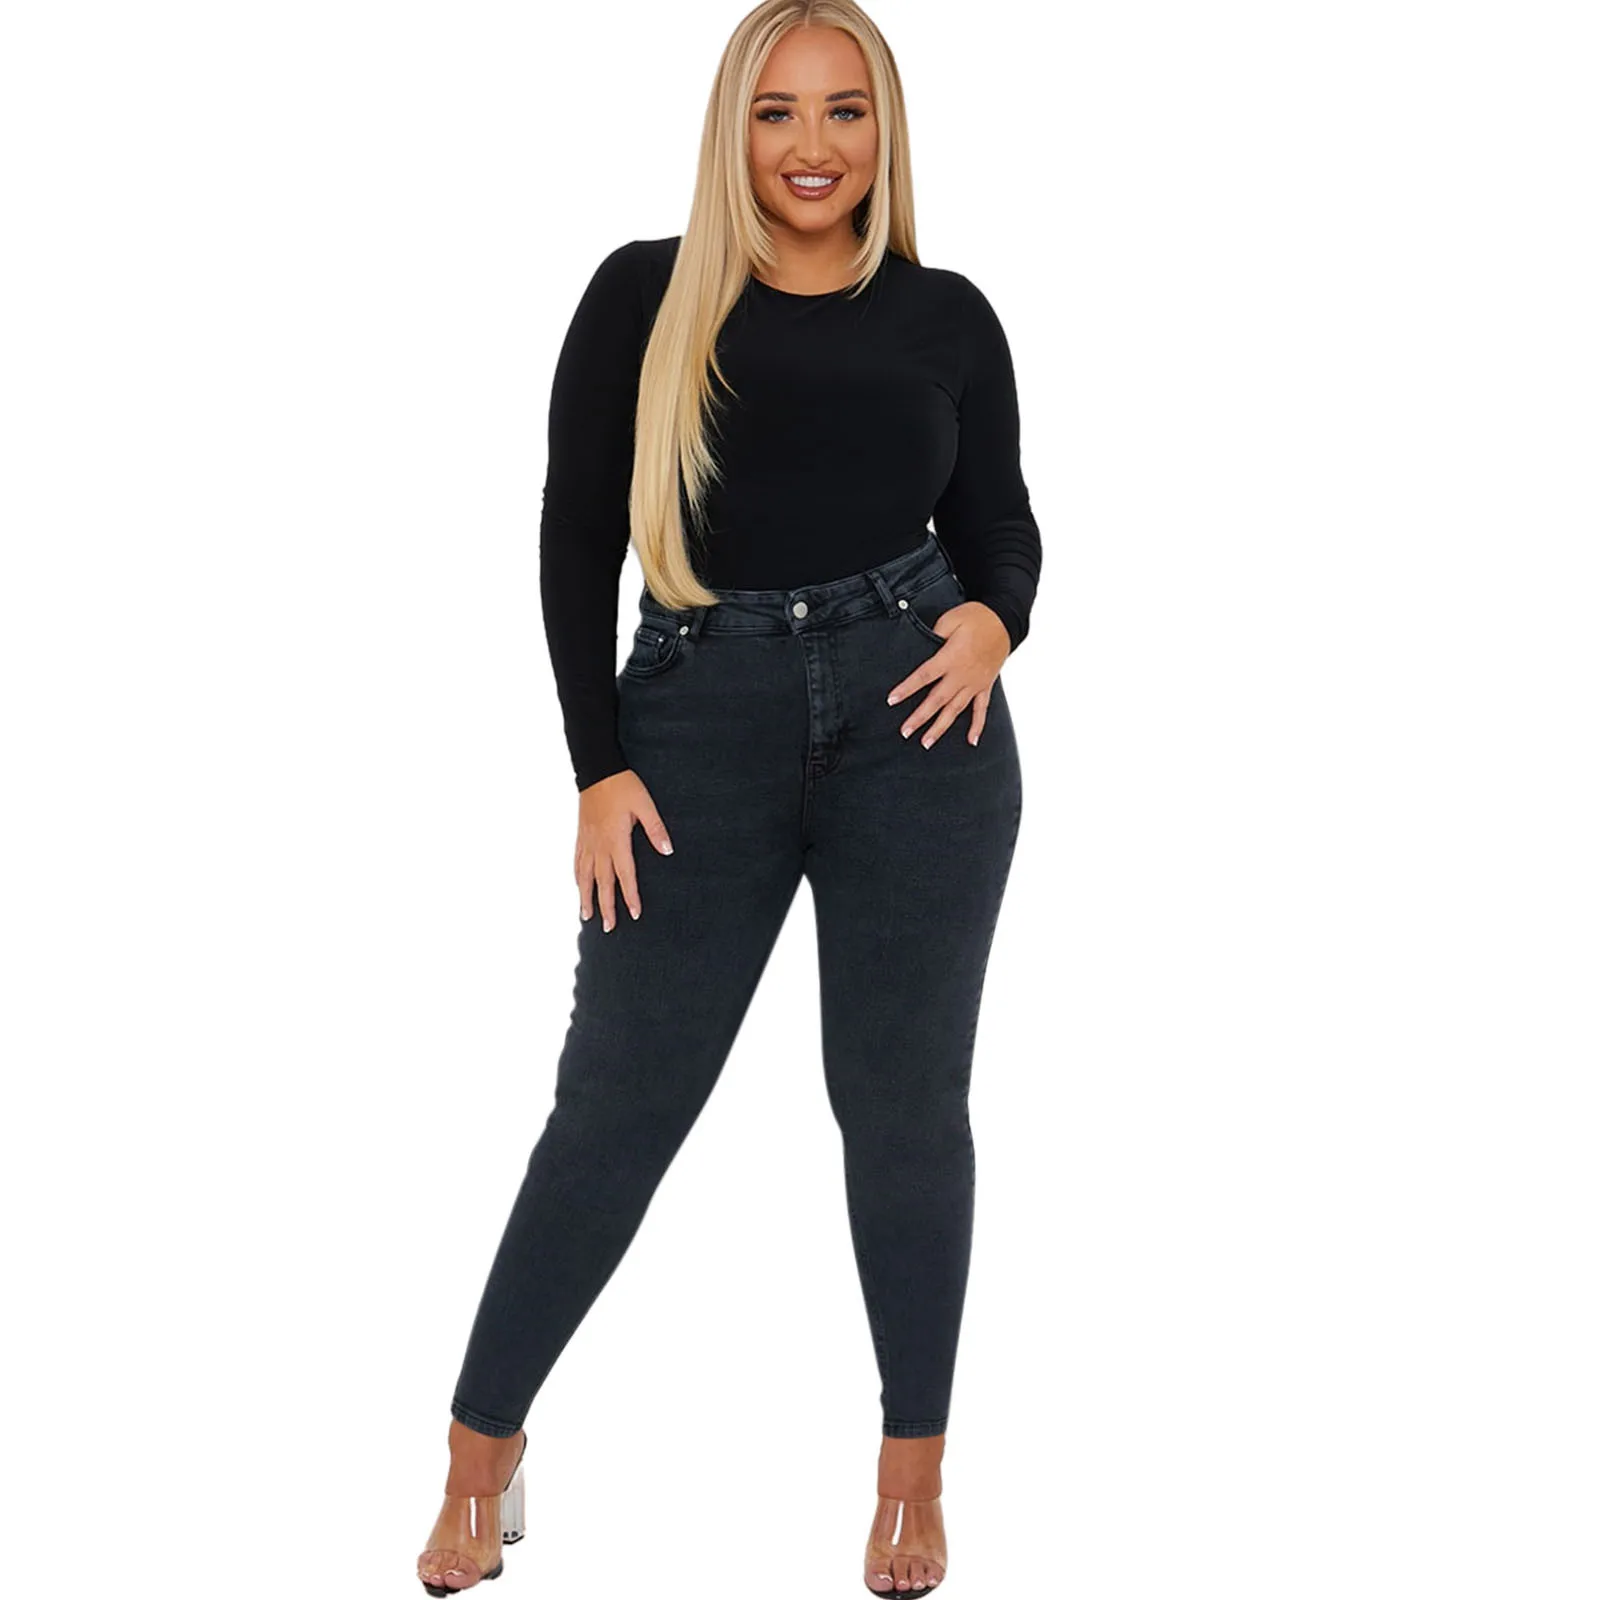 

Женские джинсы-карандаш большого размера с завышенной талией, классические эластичные узкие джинсы с застежкой-молнией и пуговицами